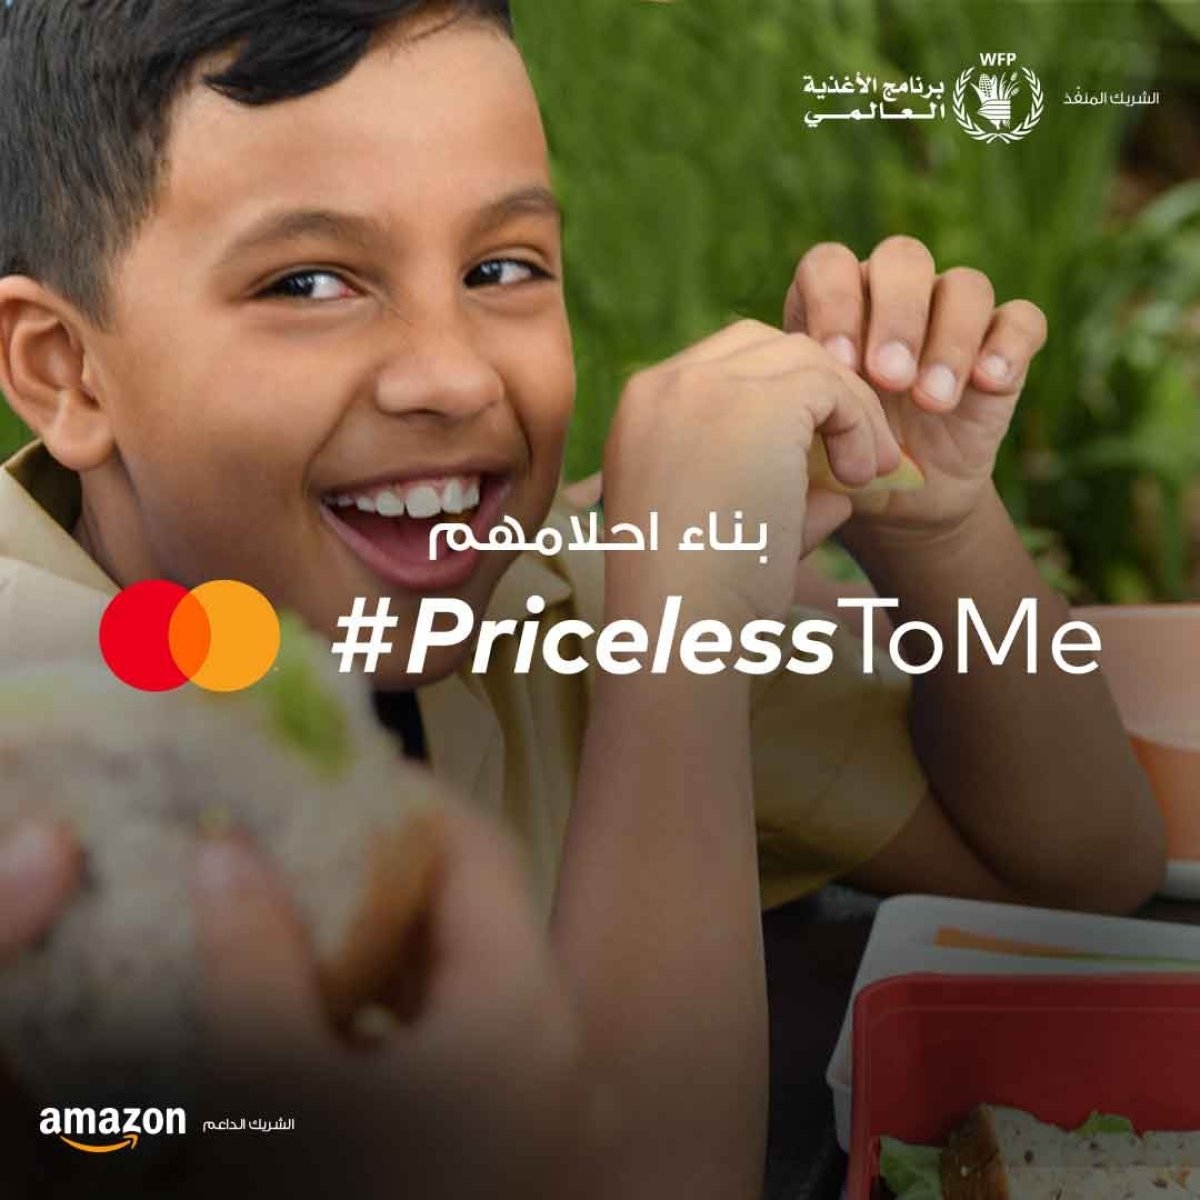 ماستركارد تتعاون مع برنامج الأغذية العالمي لتوفير مليون وجبة مدرسية خلال شهر رمضان عند تسوق العملاء على Amazon.eg